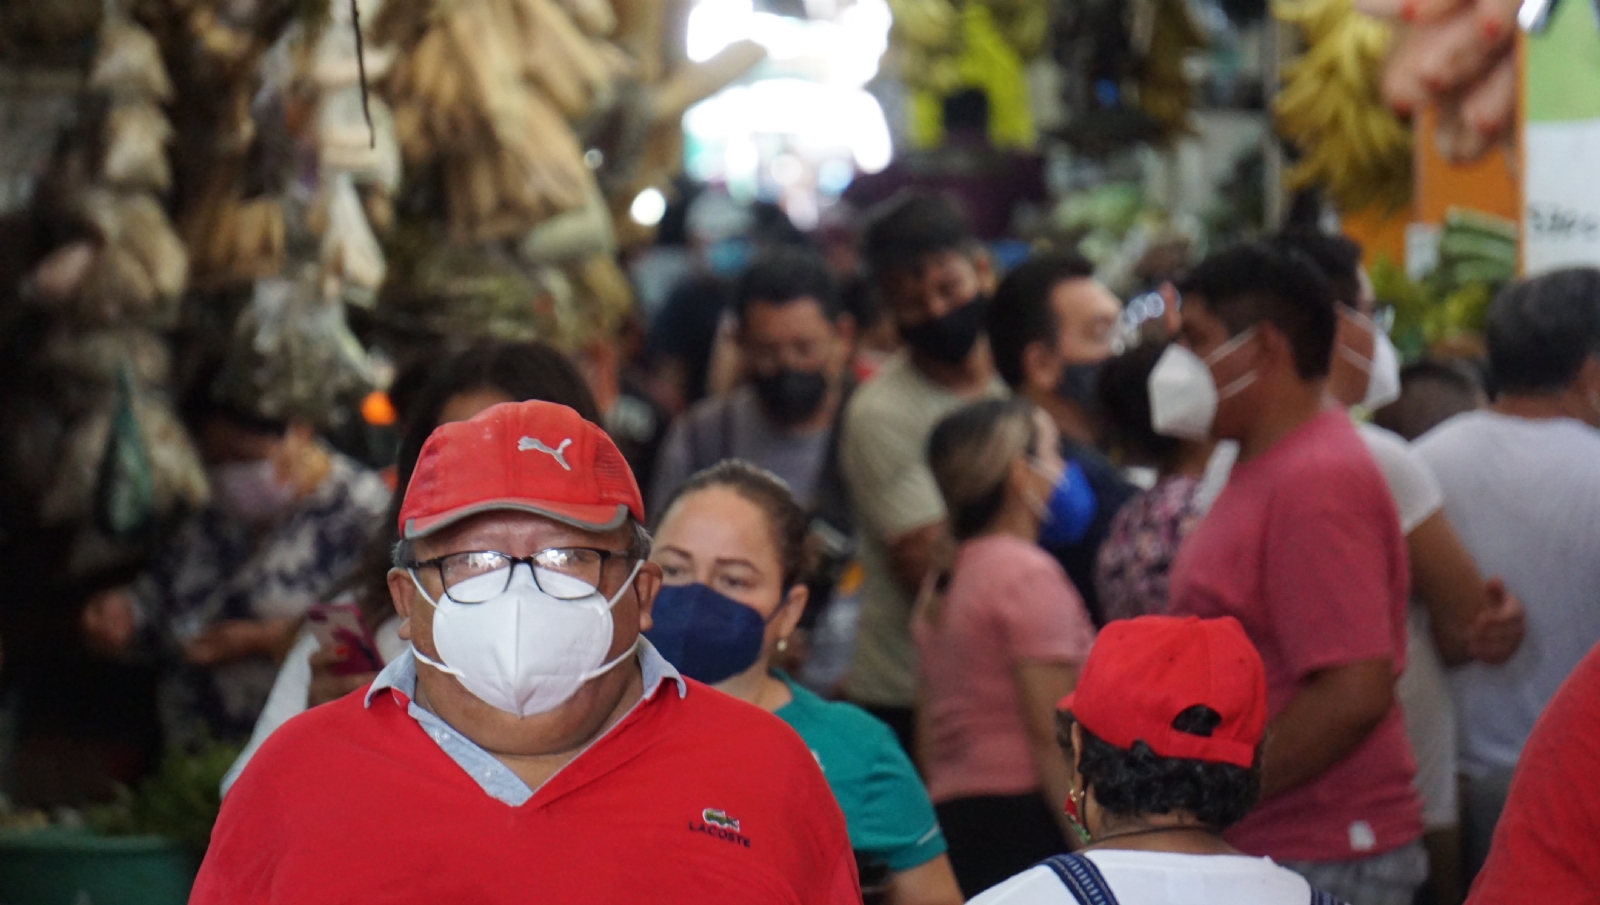 Campeche retrocede en nutrición, bienestar y salud: México, ¿cómo vamos?